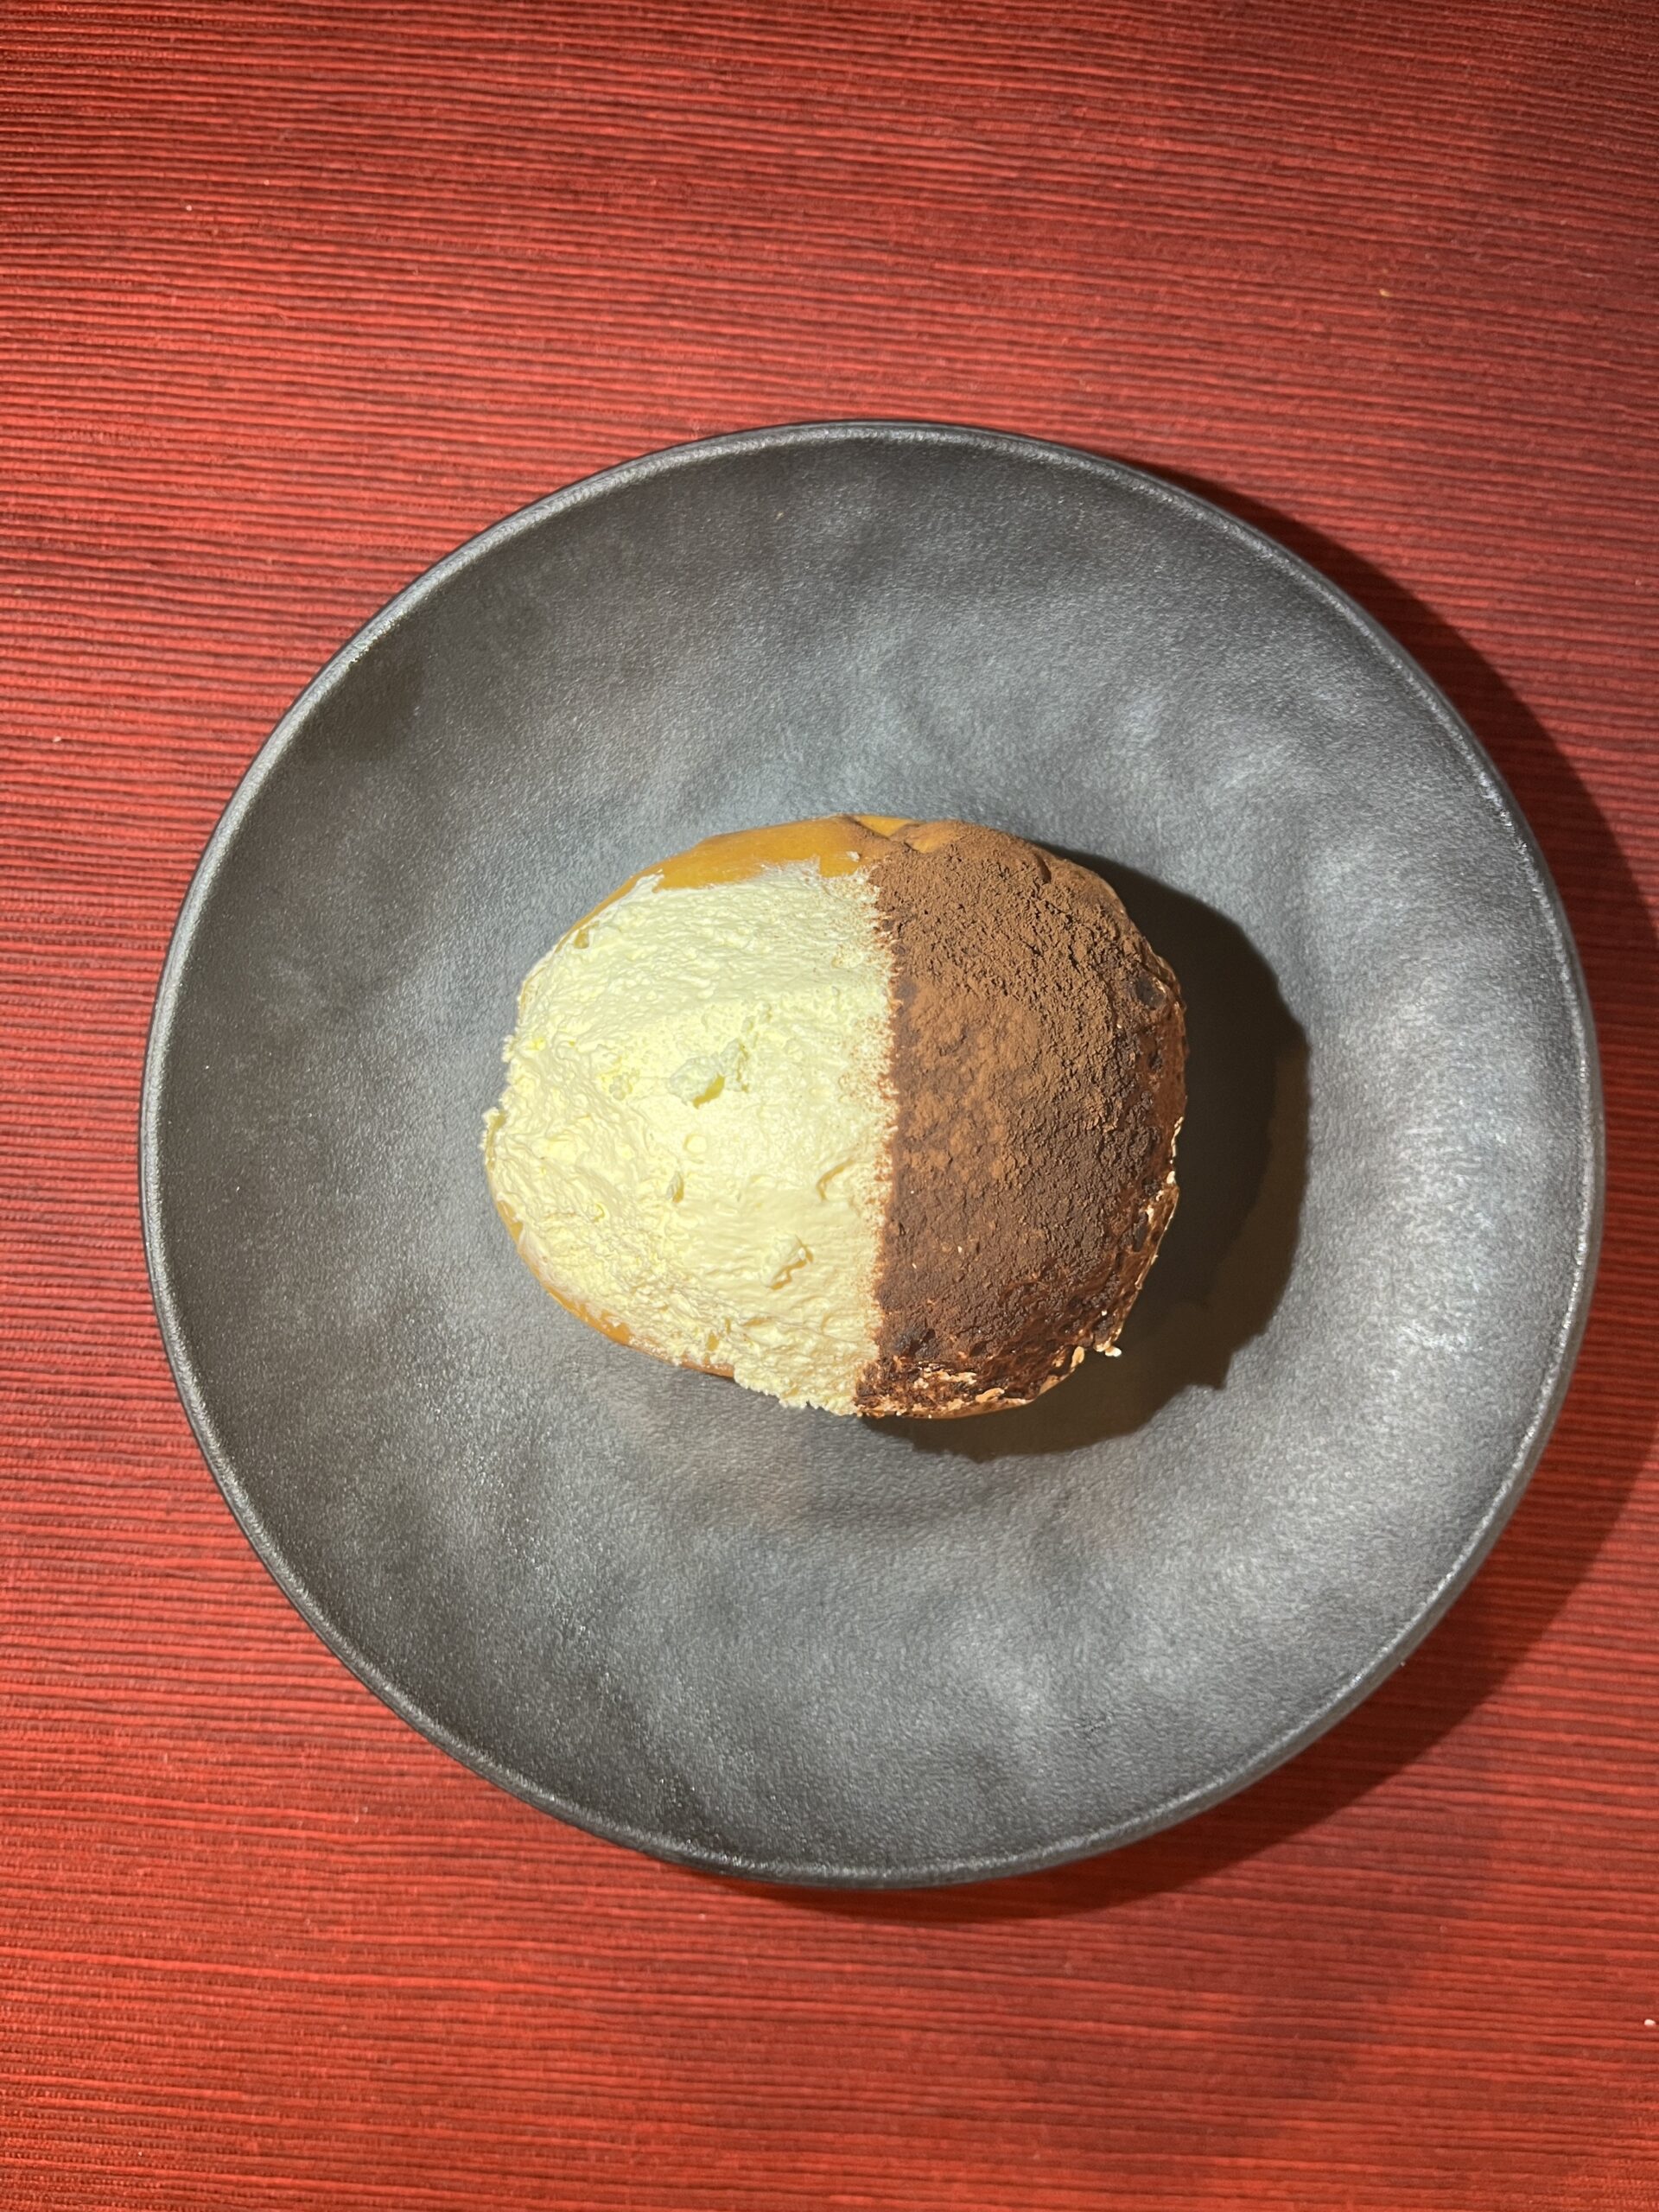 山崎製パン・ジャーマンベーカリーのマリトッツォティラミス風を食べてみた